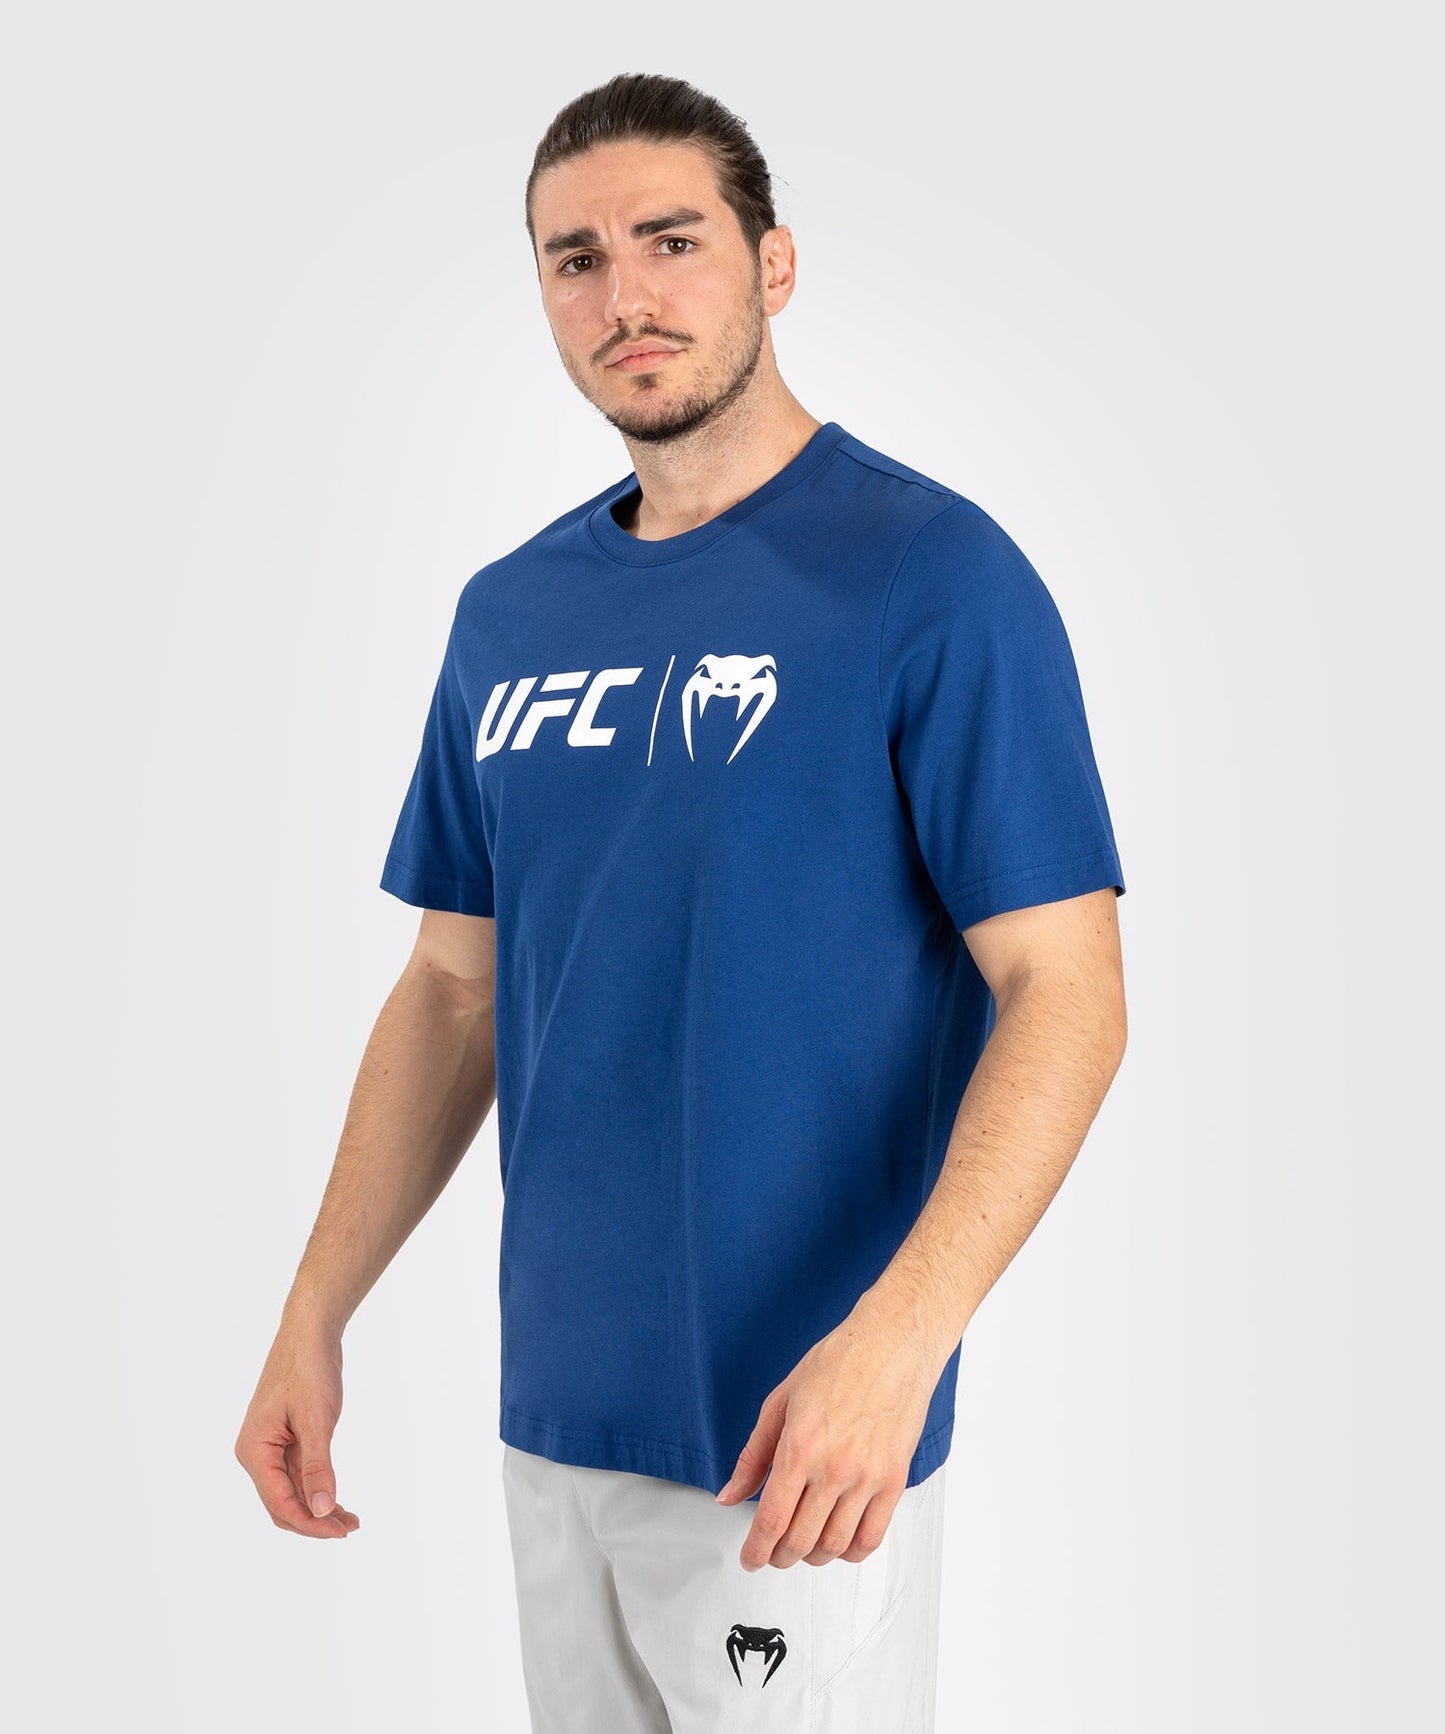 UFC Venum Classic T-shirt - Marineblauw/wit